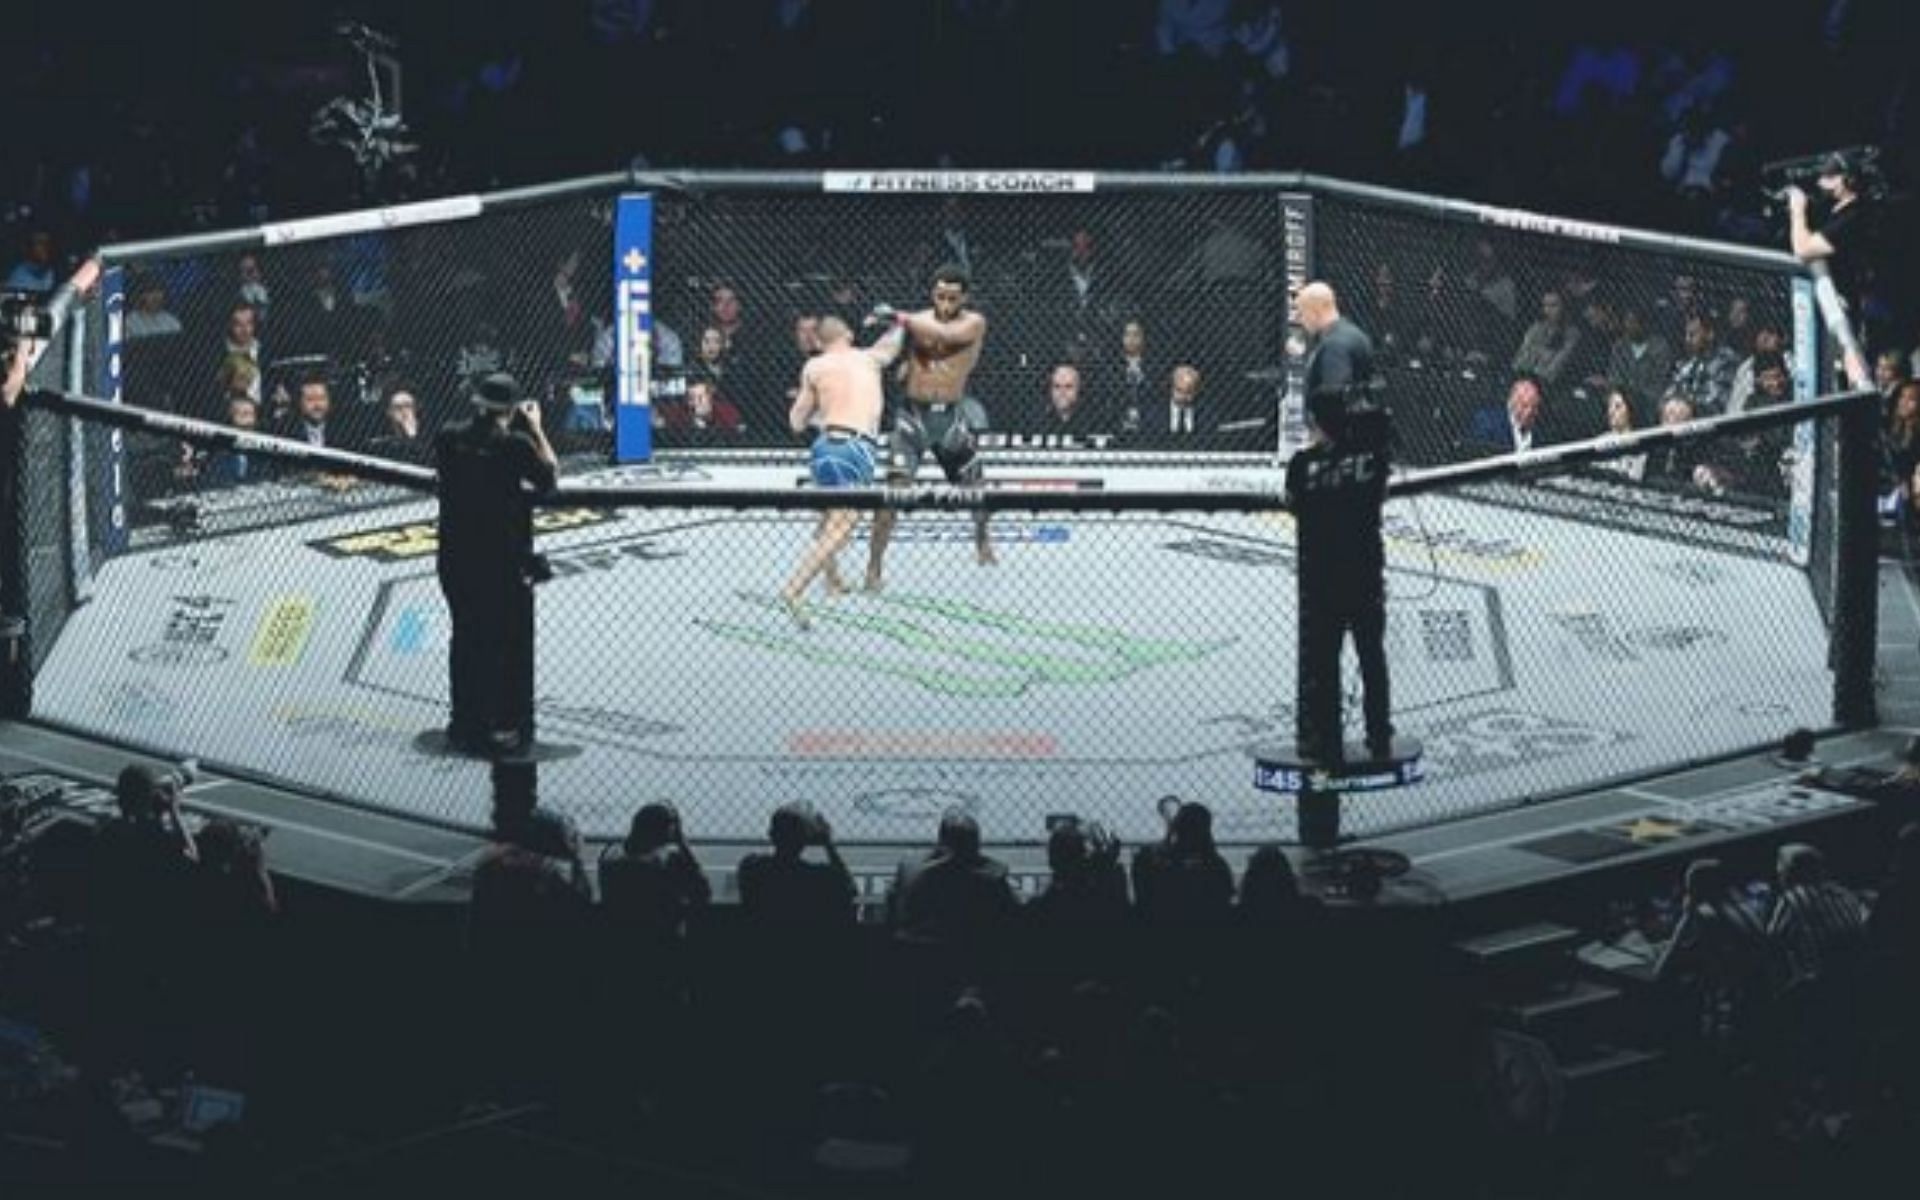 The famed UFC octagon [Image courtesy @ufc on Instagram]